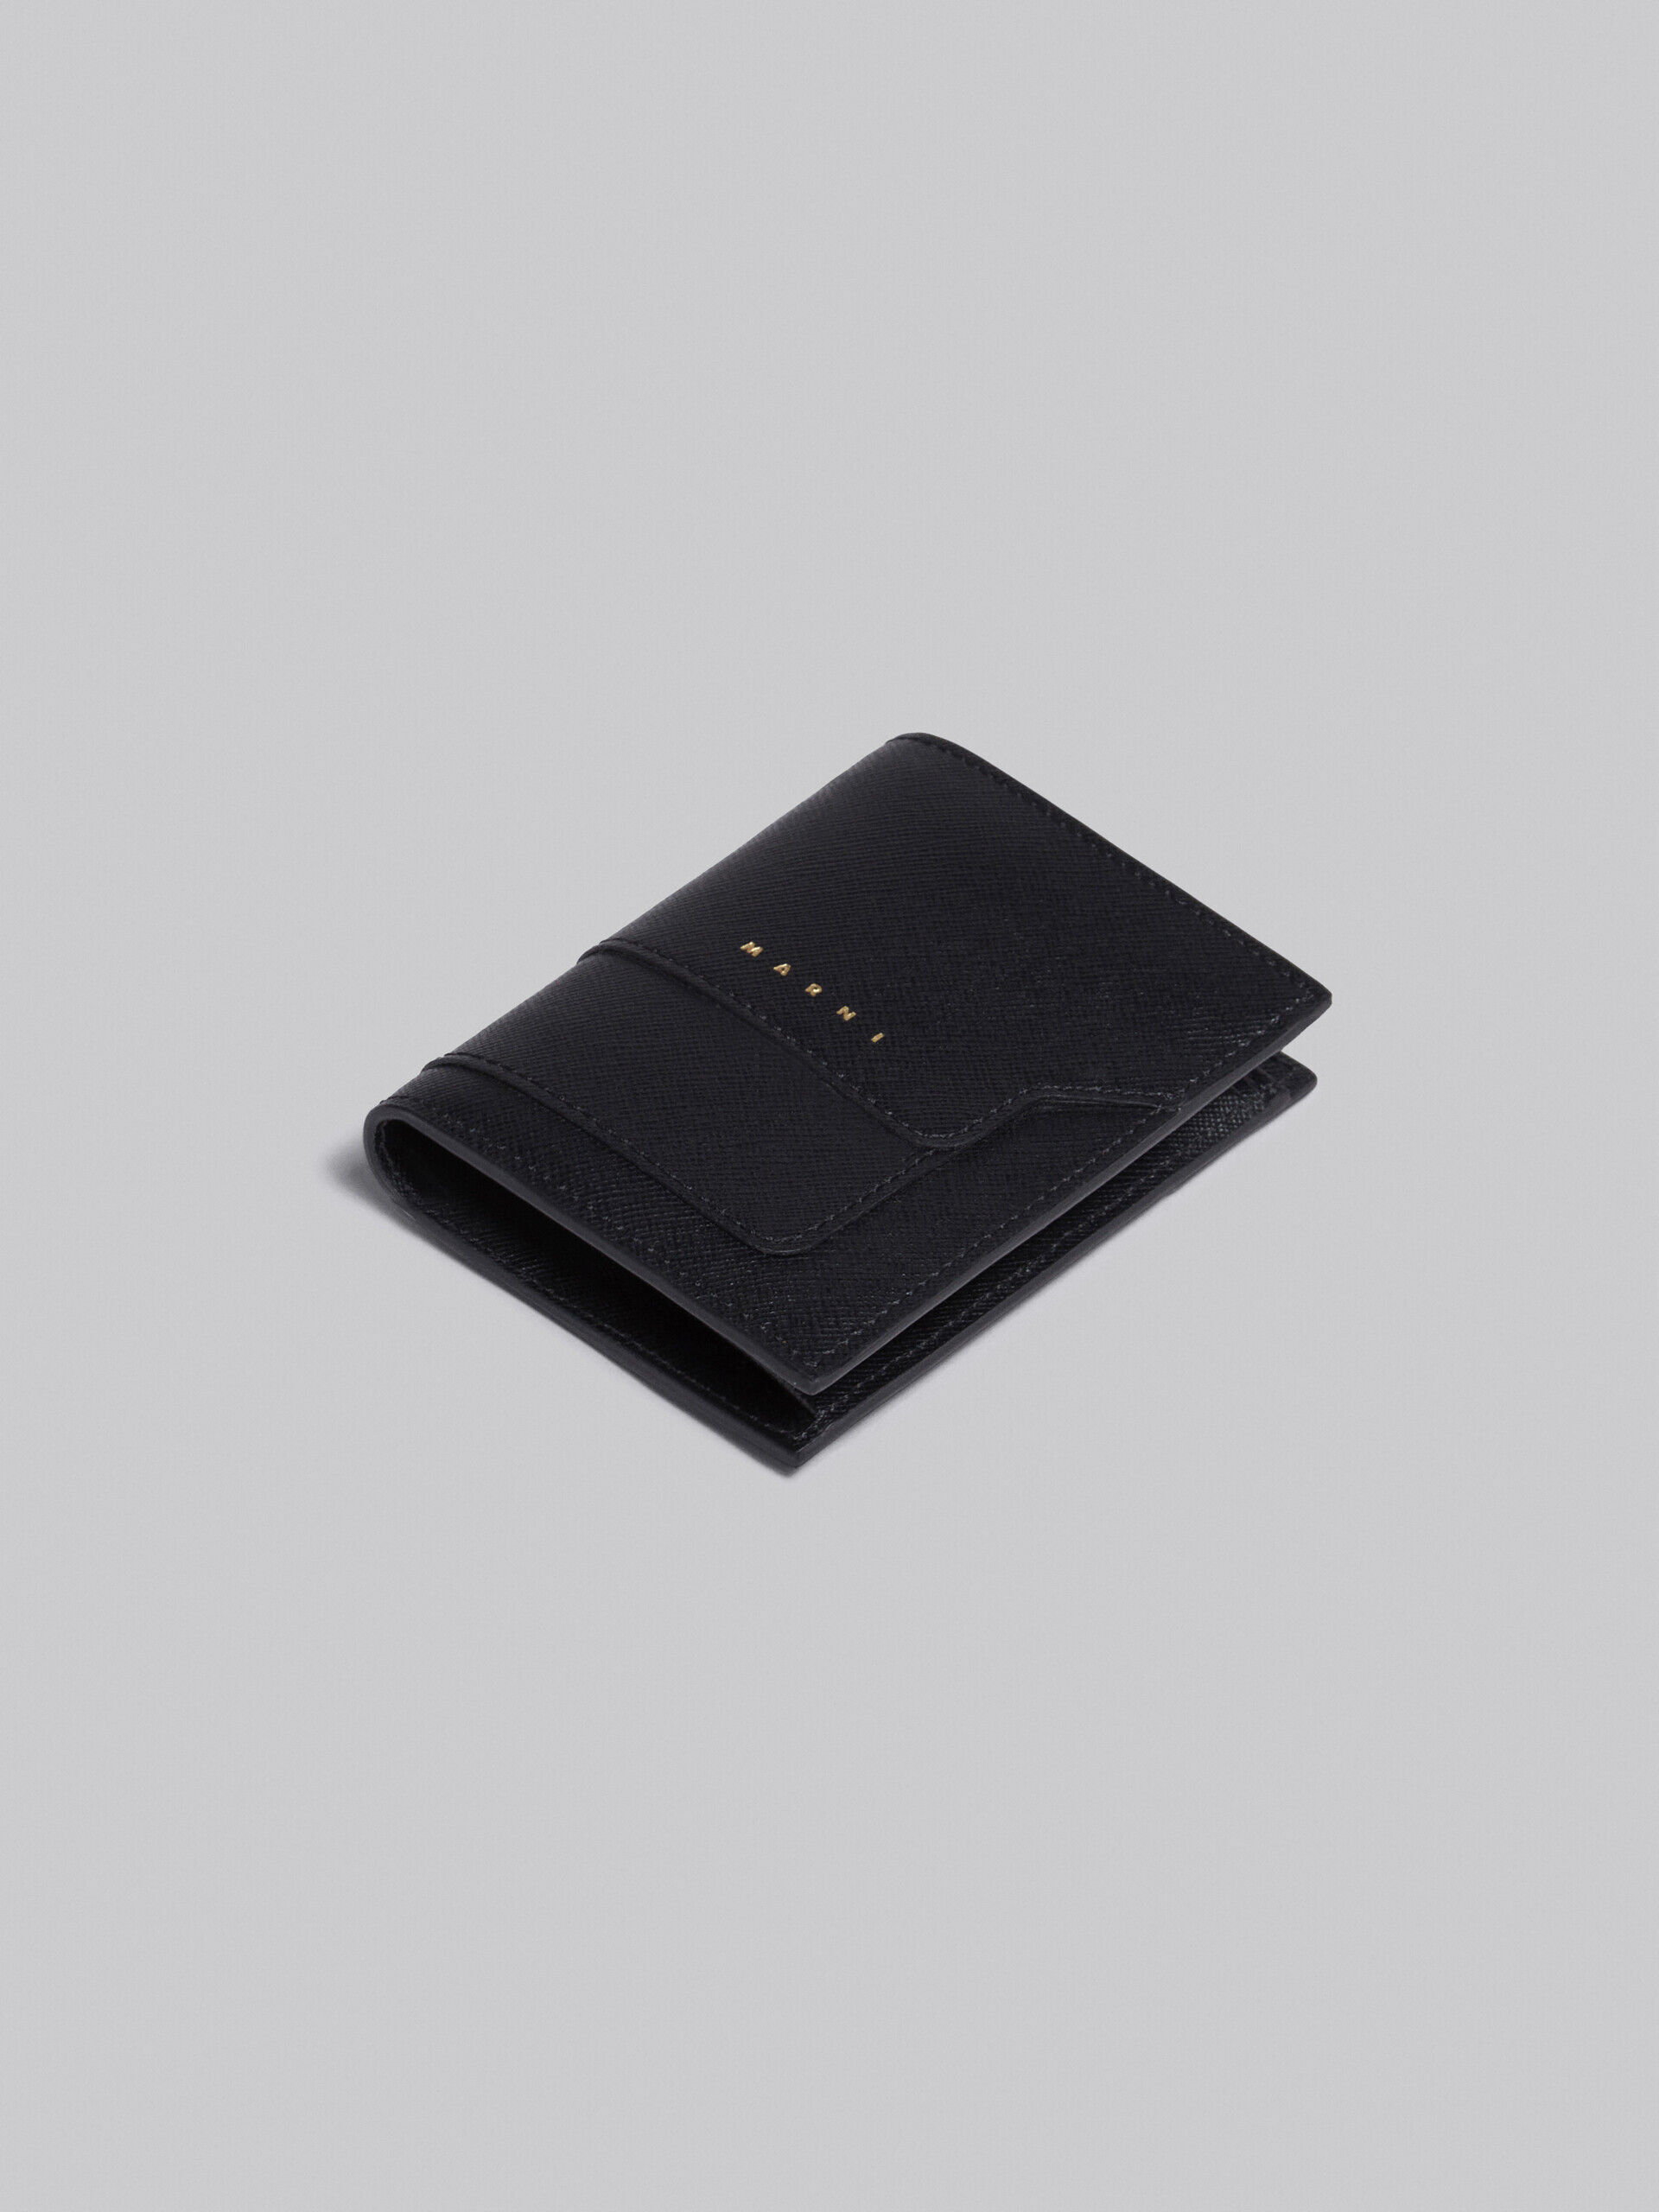 20,900円ブラック サフィアーノカーフレザー製 二つ折り財布